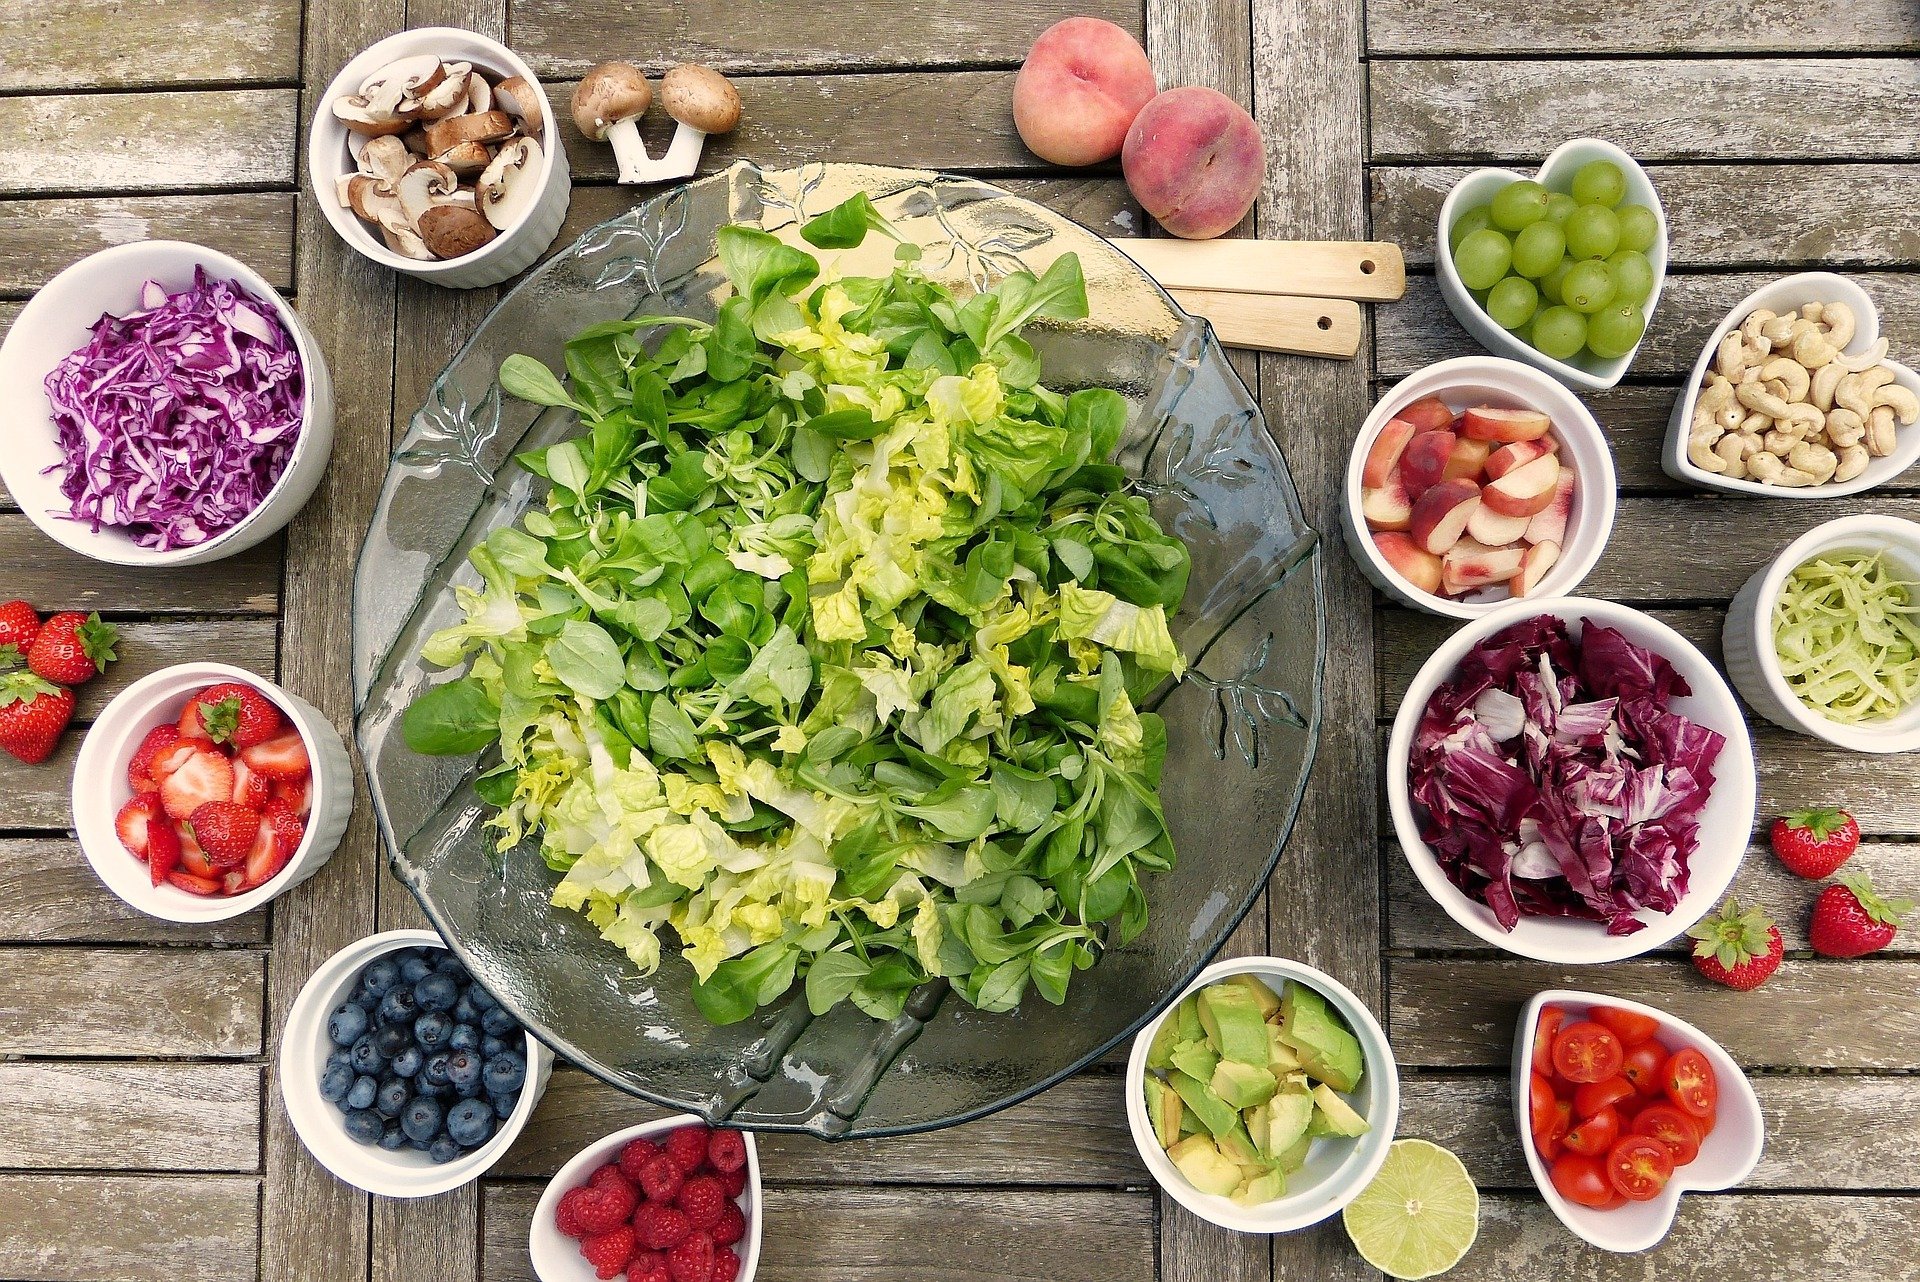 La dieta dell’insalata funziona davvero? – Vediamo insieme